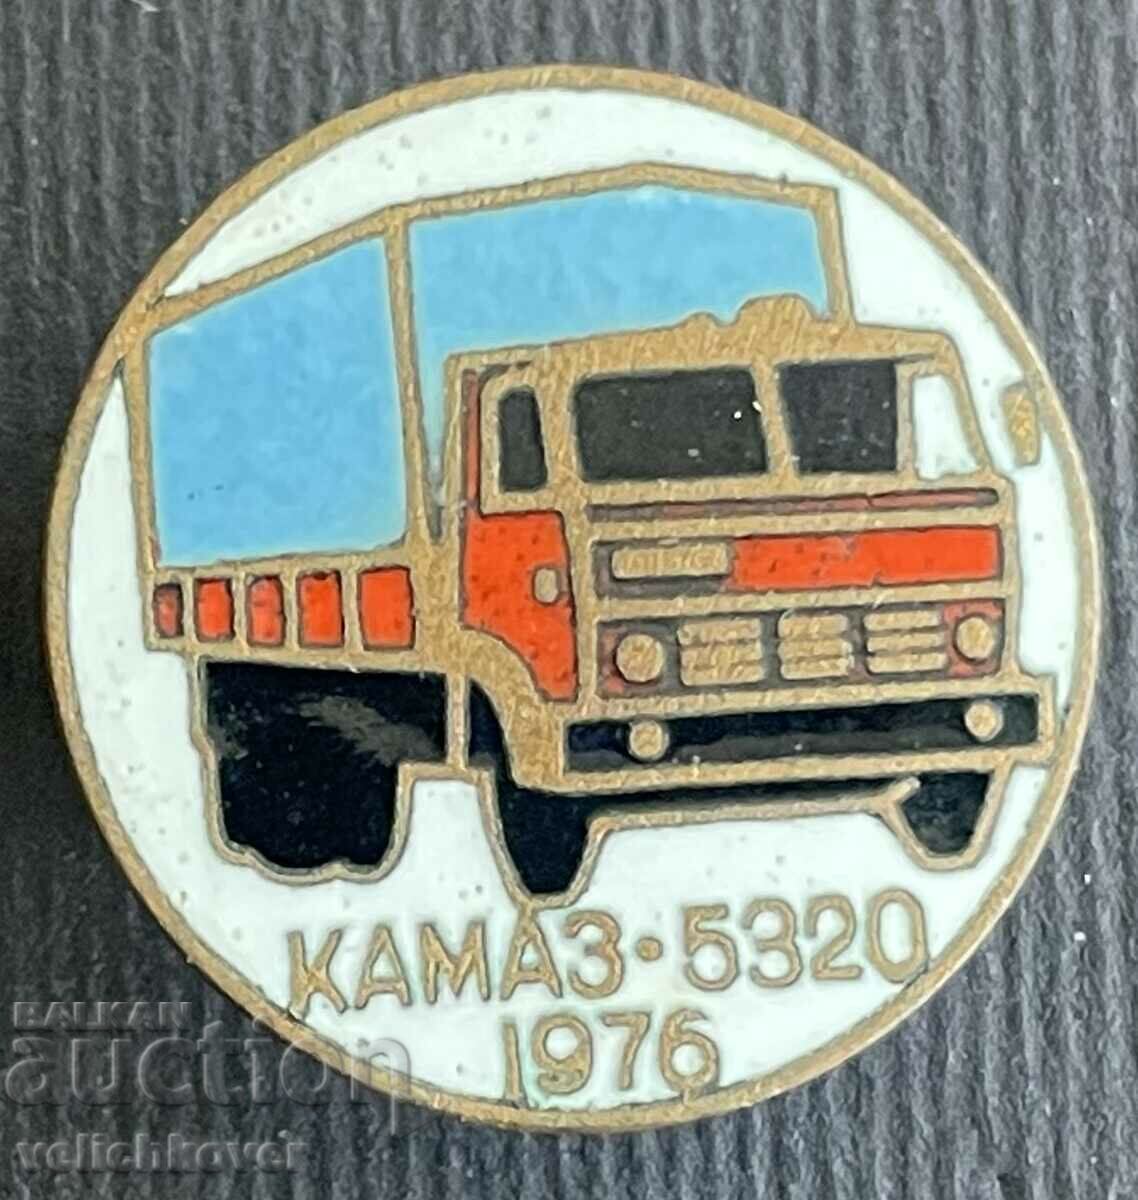 35758 Σήμα ΕΣΣΔ Truck Kamaz 5320 μοντέλο 1976. ΗΛΕΚΤΡΟΝΙΚΗ ΔΙΕΥΘΥΝΣΗ